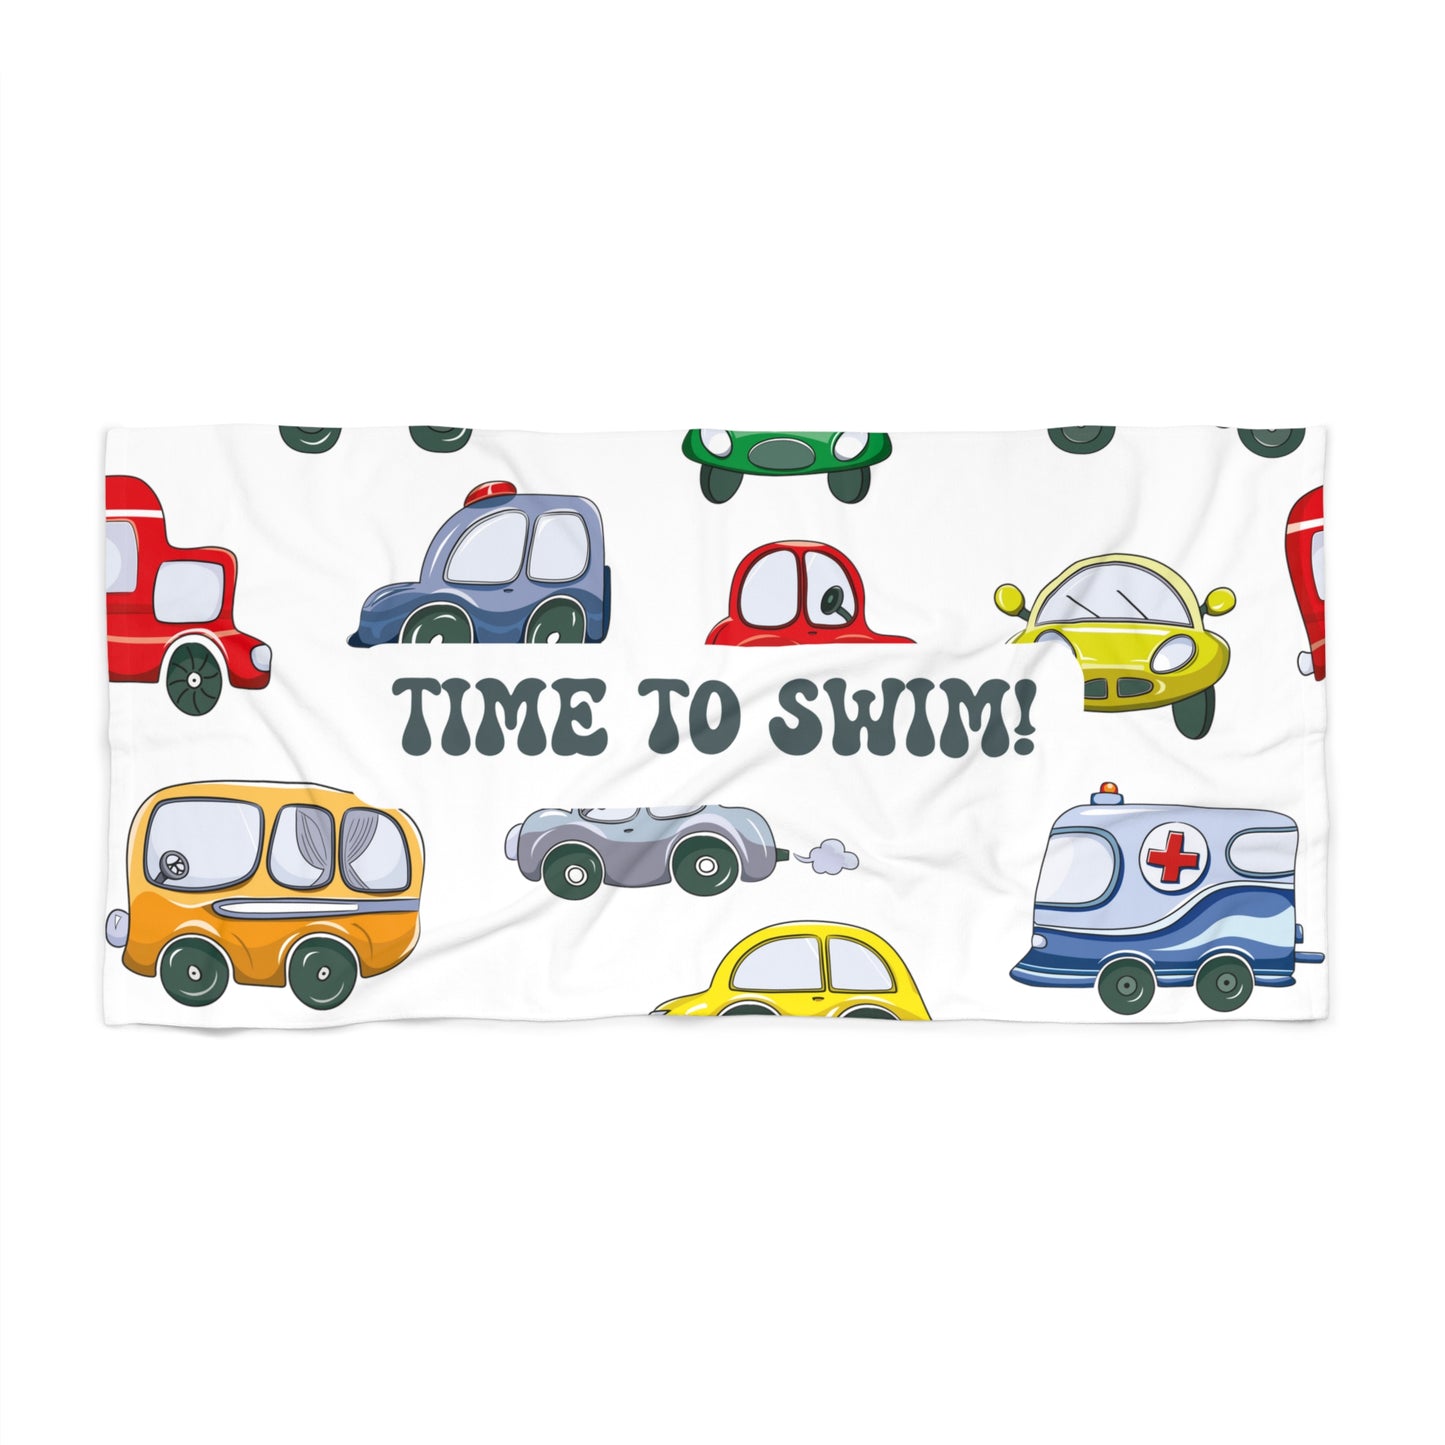 Kids Beach Towel Toddler Beach Towel Summer Towel Gift For Kids Beach Lover Gift Towels For Kids Pool Towel Summer Vacation Towel